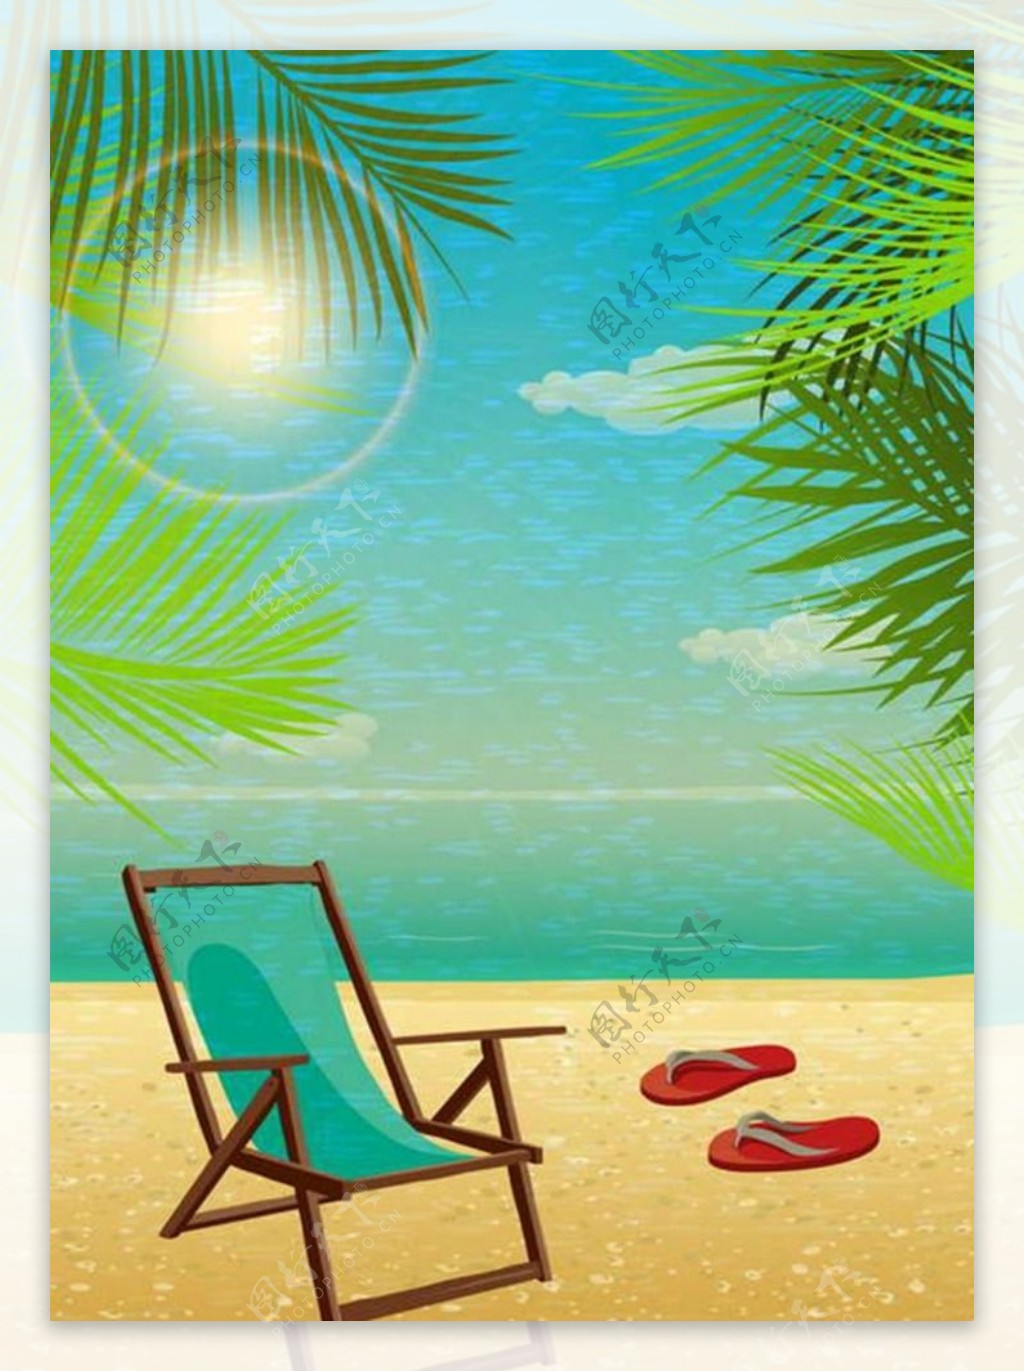 海边休闲旅游度假广告图片